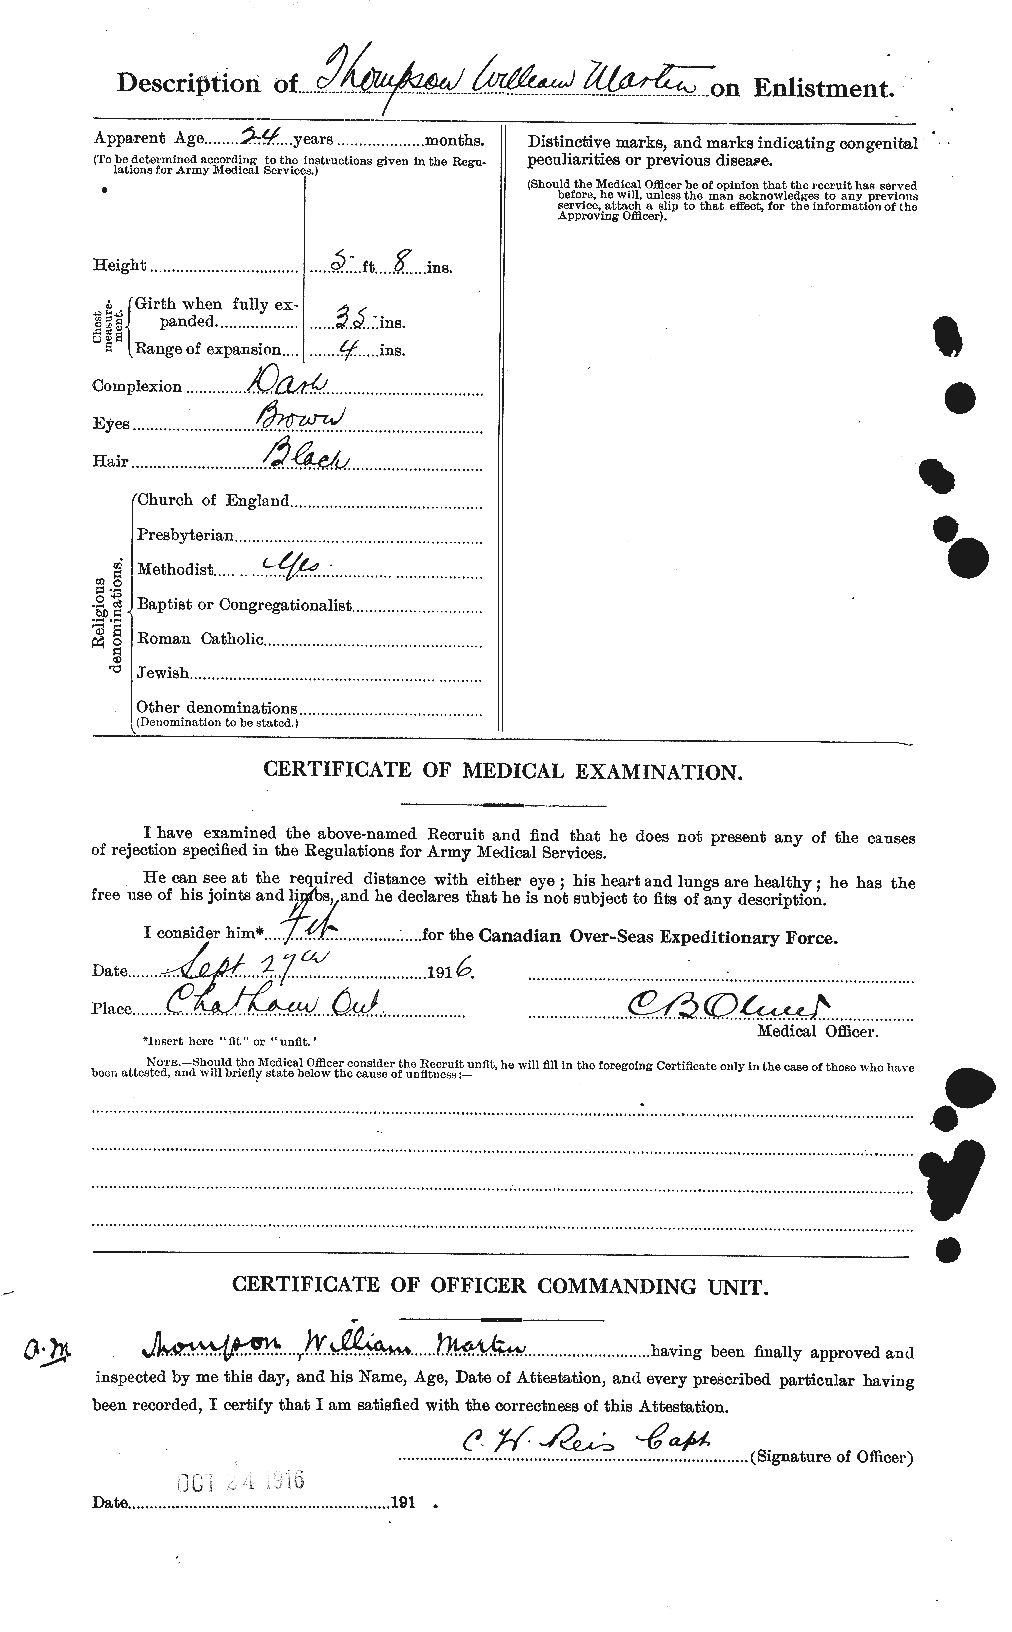 Dossiers du Personnel de la Première Guerre mondiale - CEC 631054b